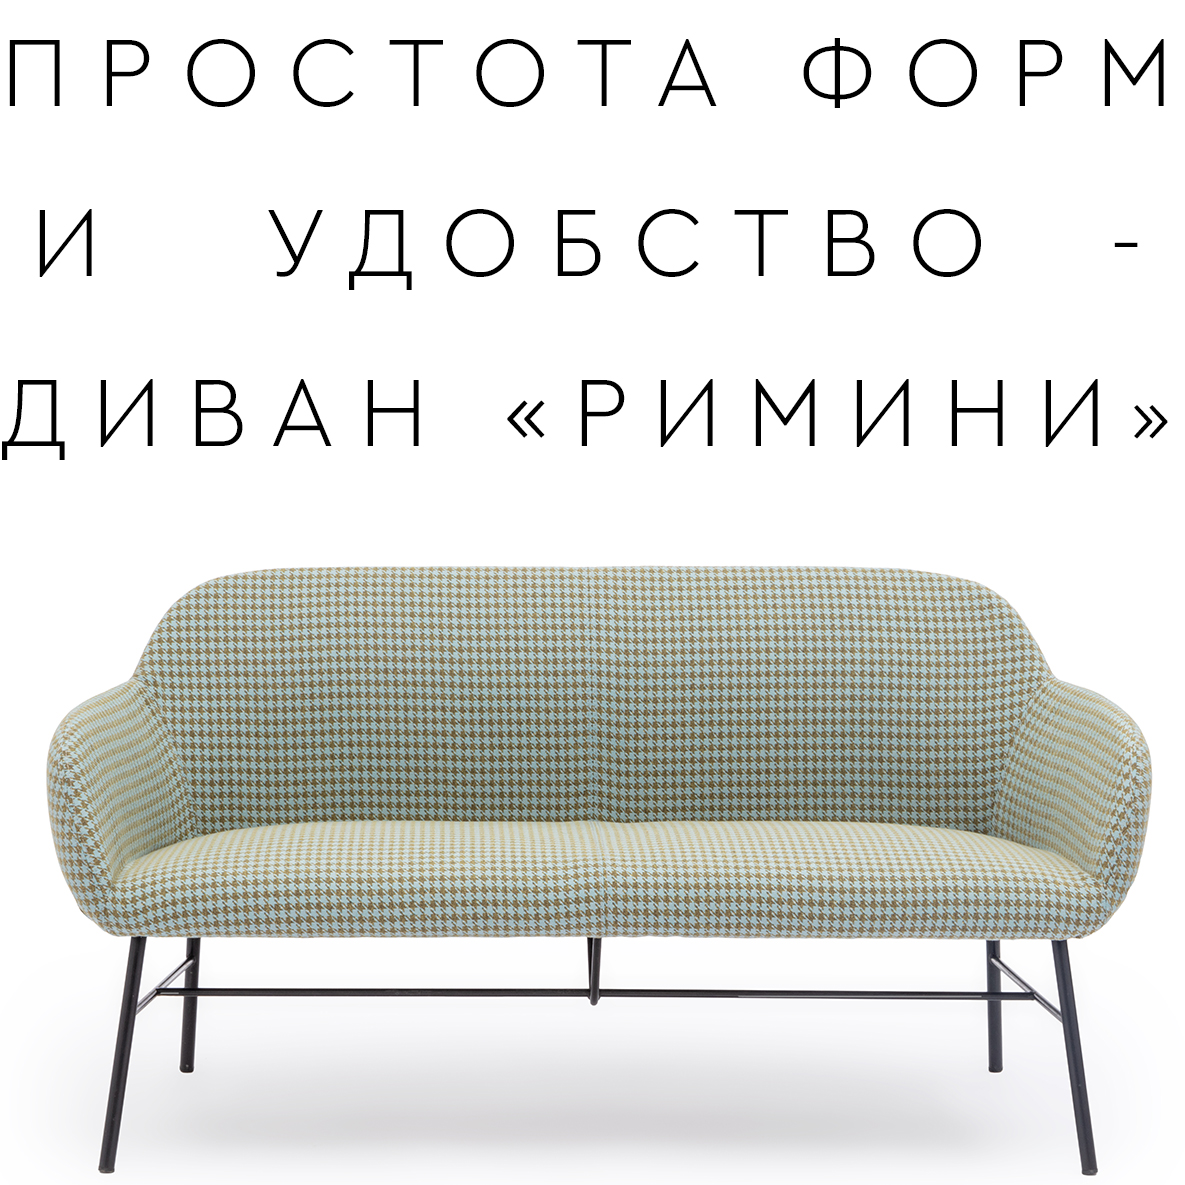 Новая модель дивана «РИМИНИ»